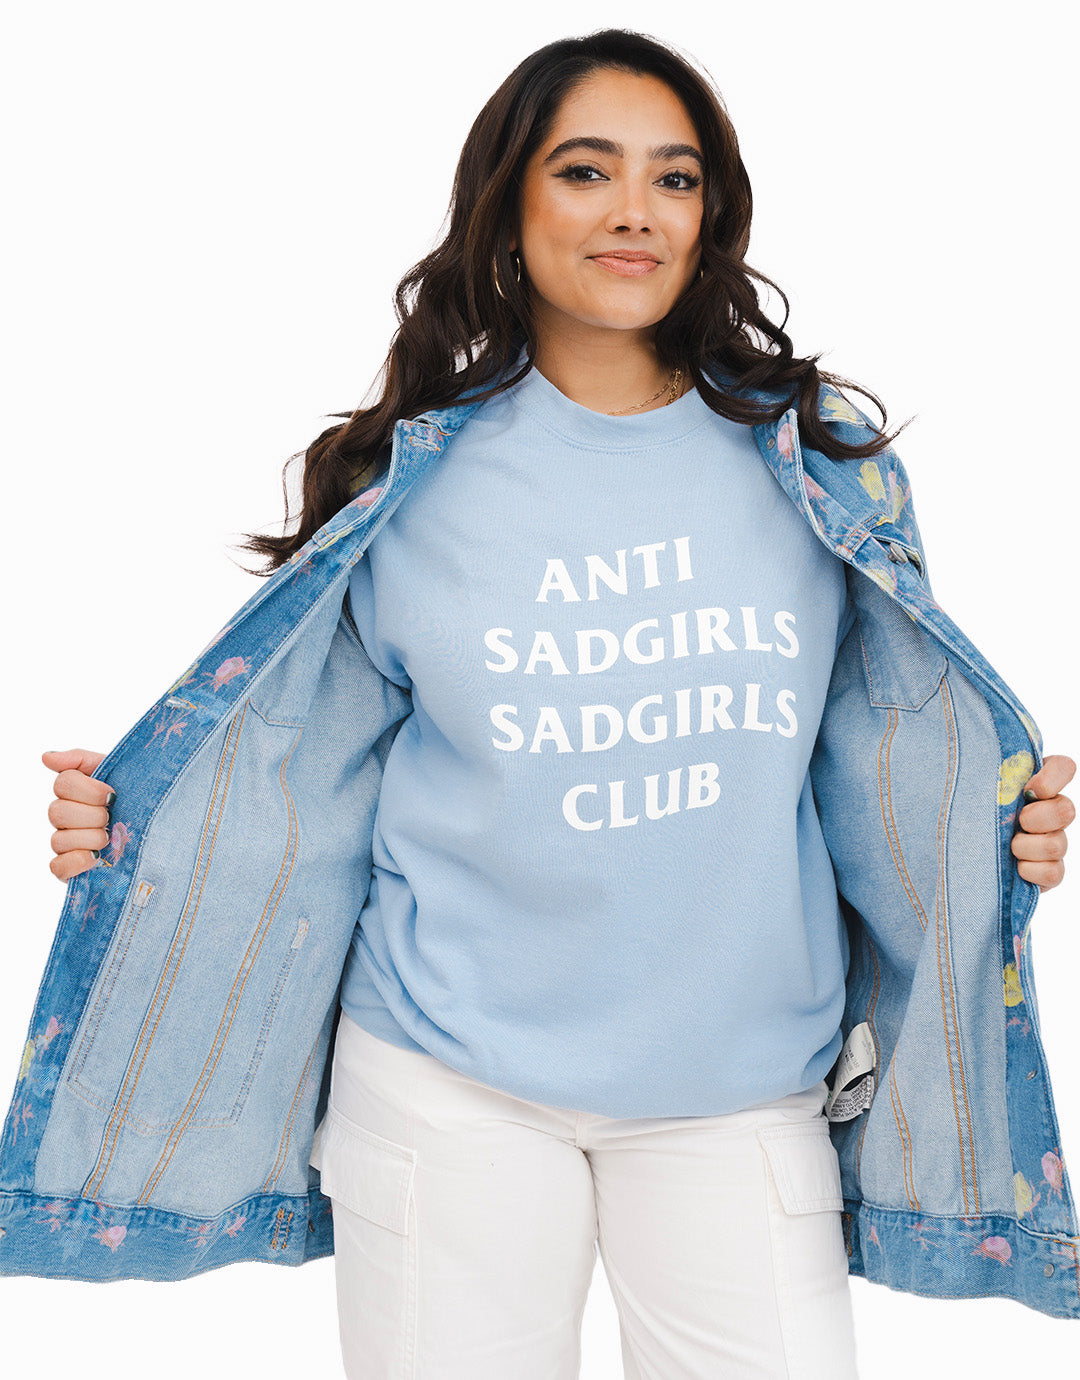 Anti Sad Girls Sad Girls Club Sweatshirt